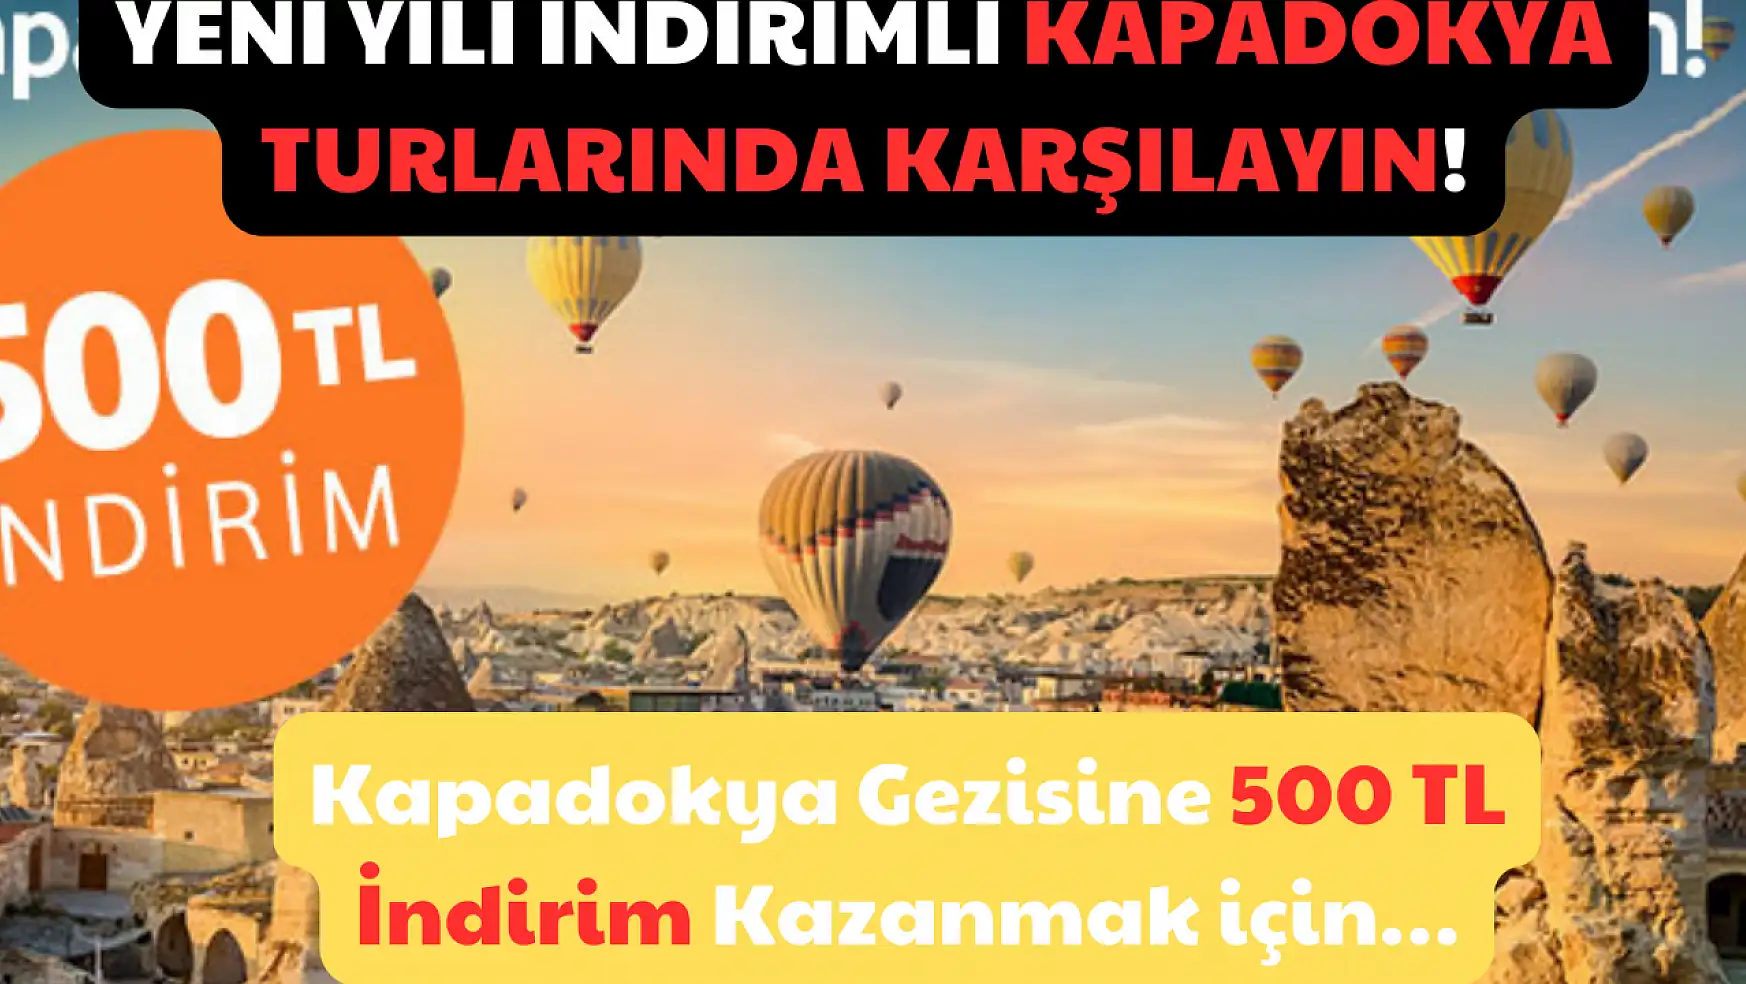 Yeni Yılı İndirimli Kapadokya Turlarında Karşılayın! Kapadokya Gezisine 500 TL İndirim Kazanmak için…